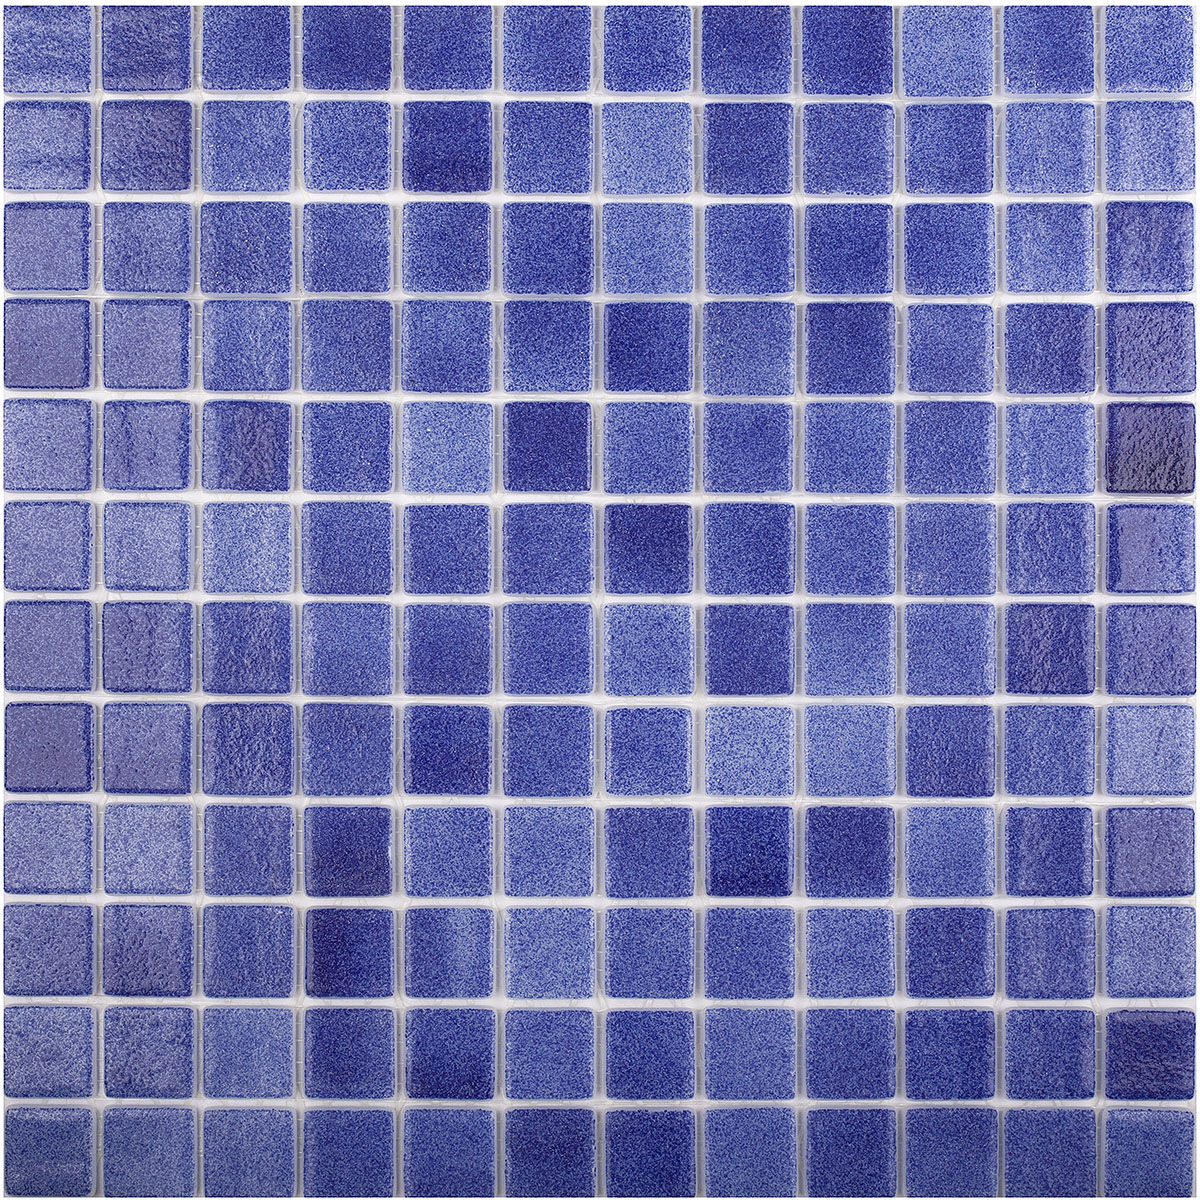 Противоскользящая мозаика Antislip 508 Antid. Vidrepur синяя